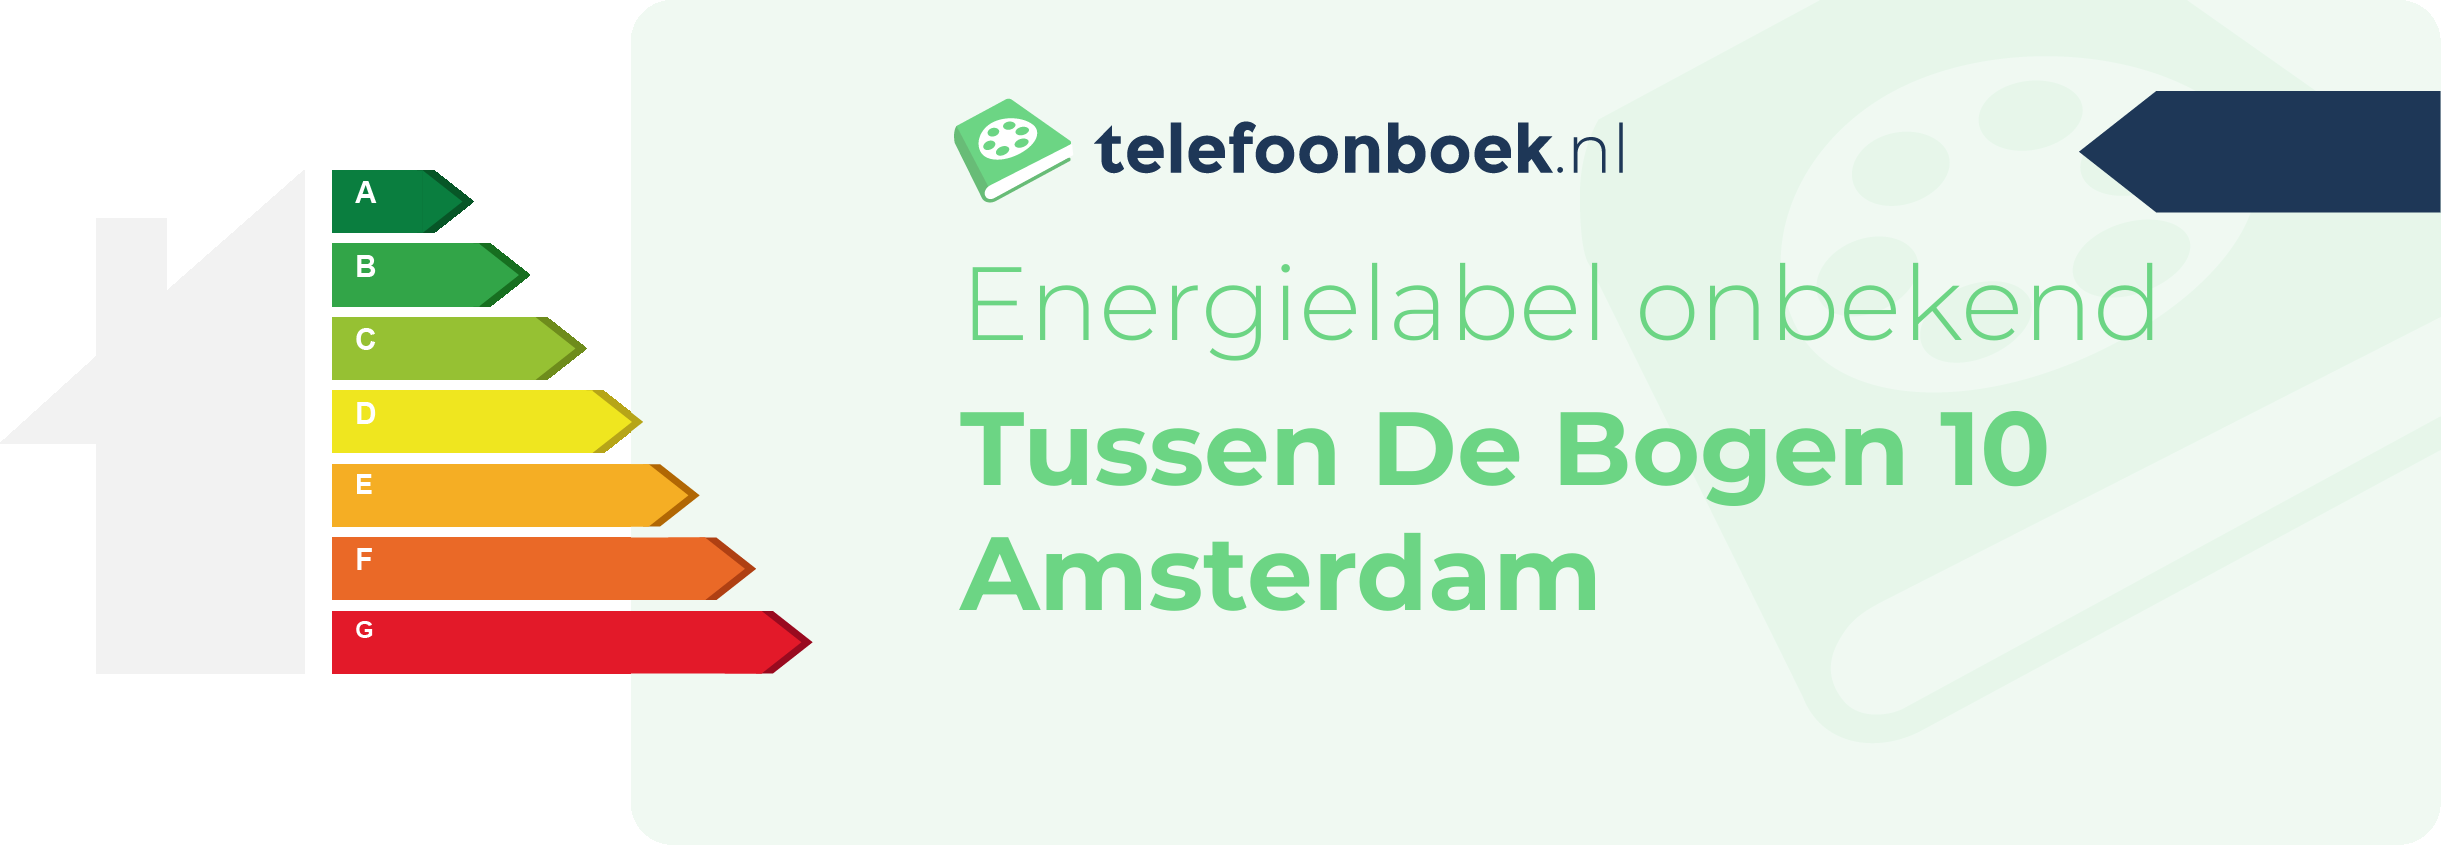 Energielabel Tussen De Bogen 10 Amsterdam